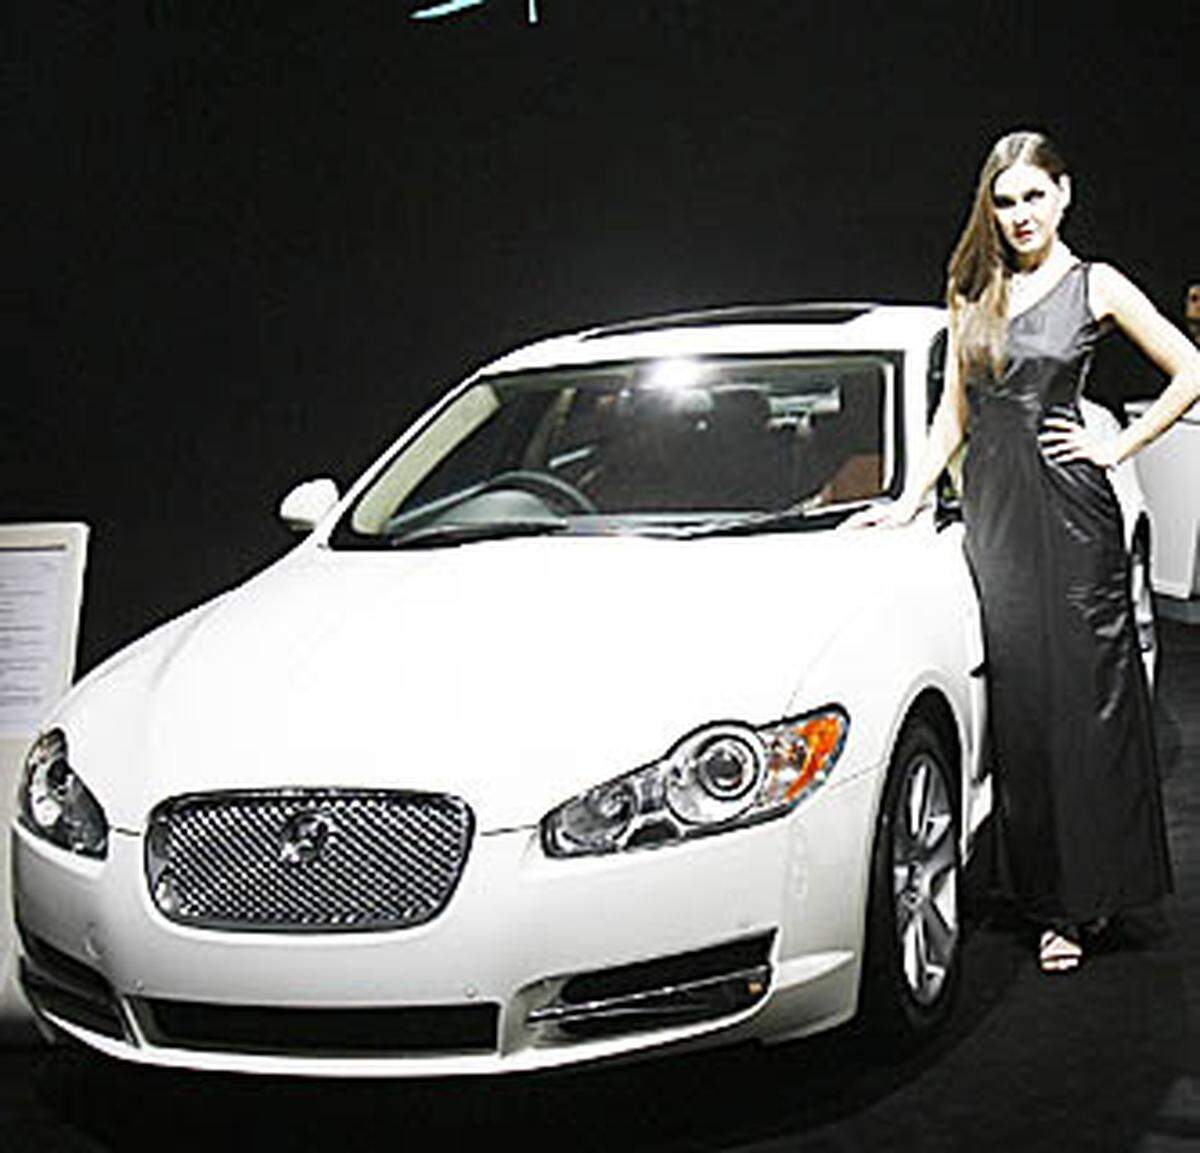 Die Luxusmarke Jaguar verliert immerhin 58,43 Prozent an Wert. Das ist auch in absoluten Beträgen viel: Bei einem Neupreis von angenommen 200.000 Euro ist ein "Kätzchen" nach vier Jahren nur noch gut 83.000 Euro wert.